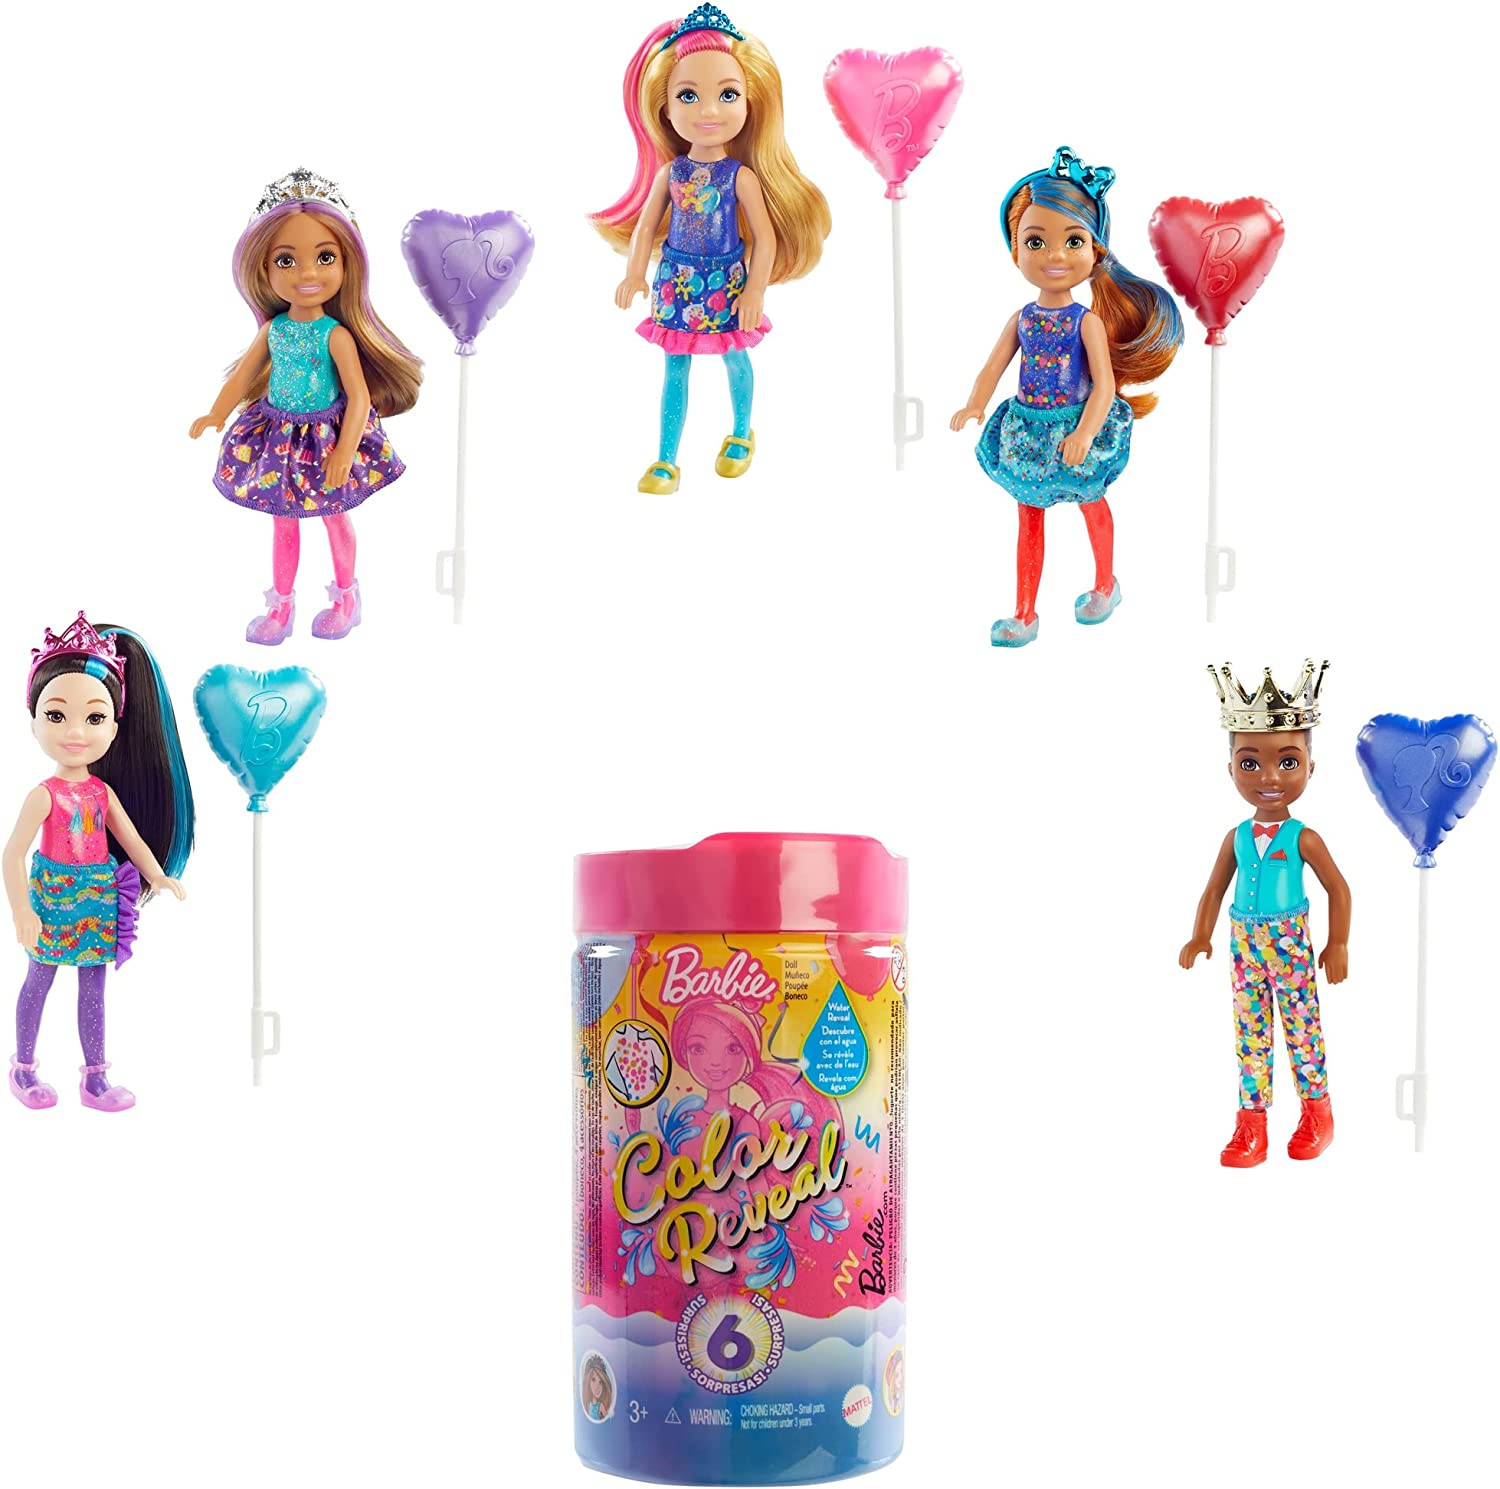 Mattel Barbie Pop Reveal Chelsea Doll